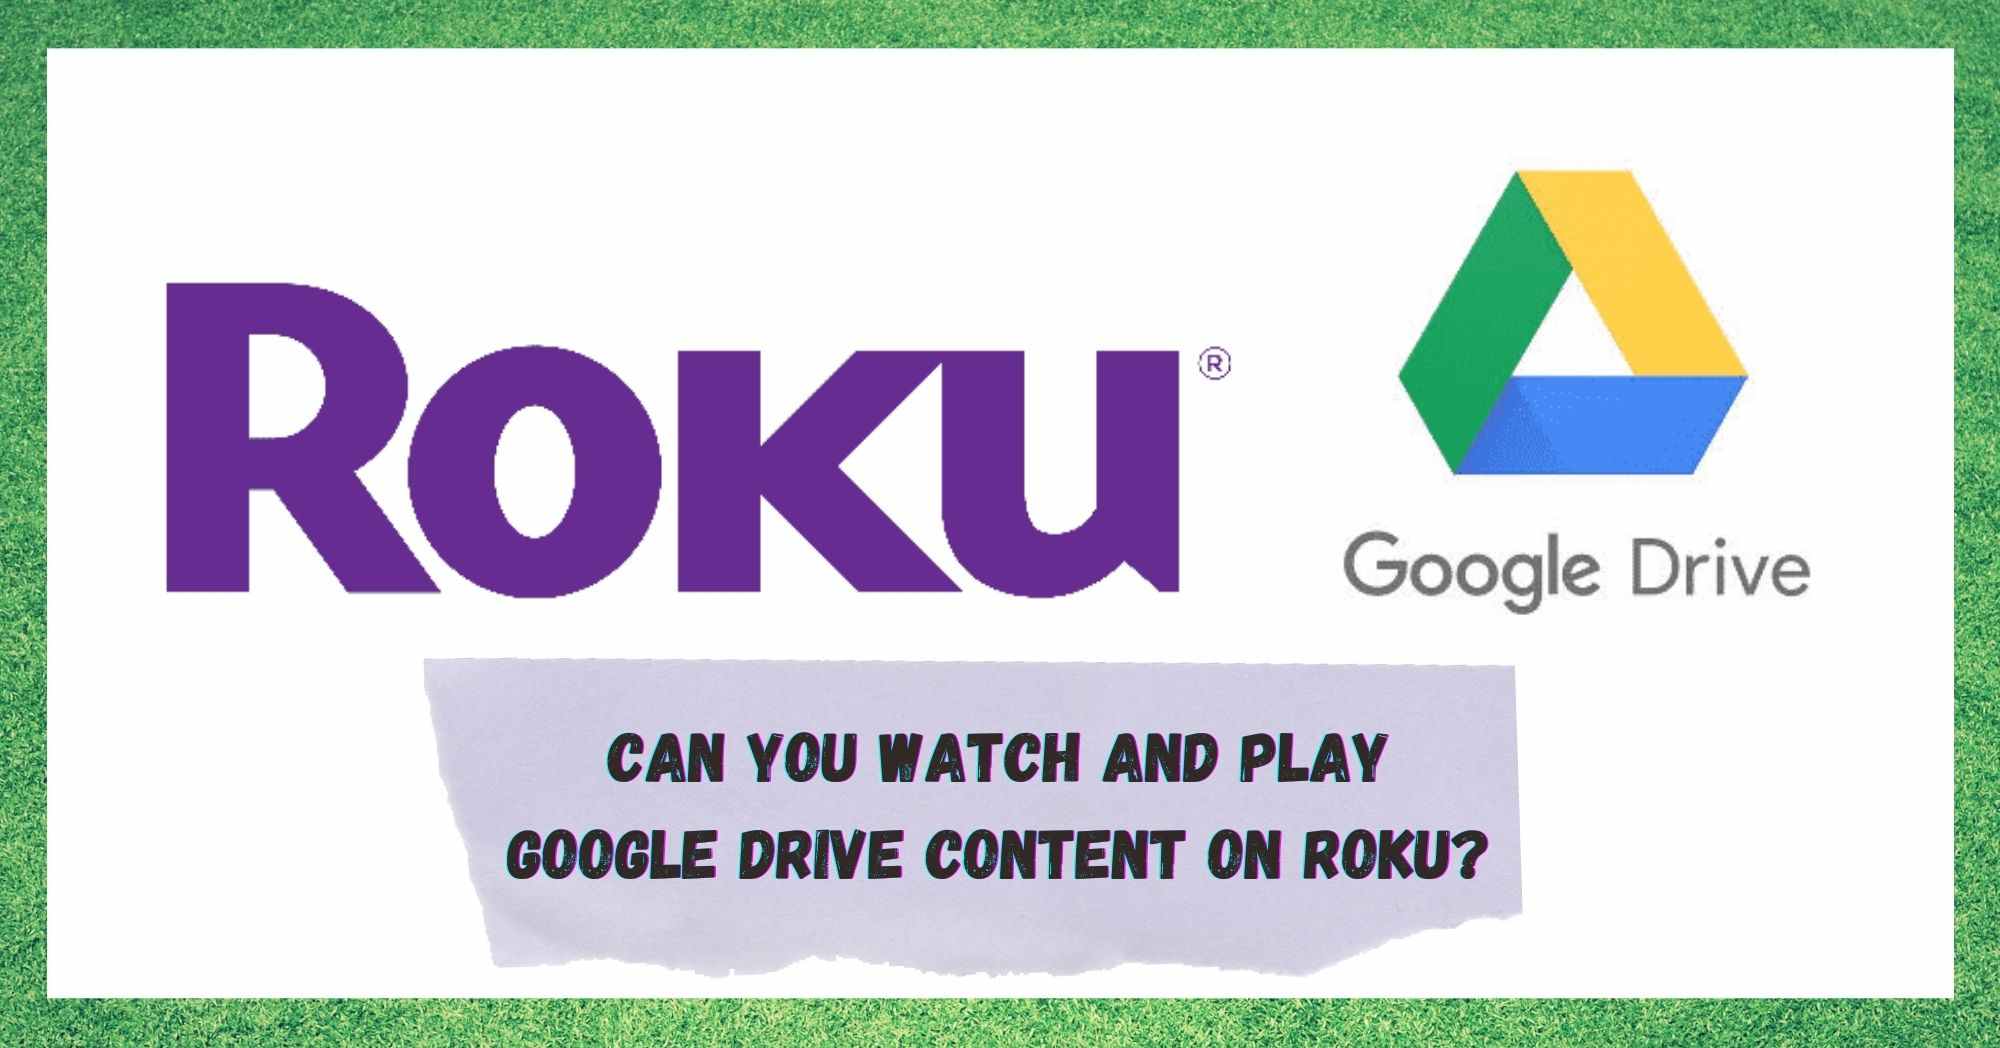 შეგიძლიათ უყუროთ და ითამაშოთ Google Drive კონტენტი Roku-ზე?